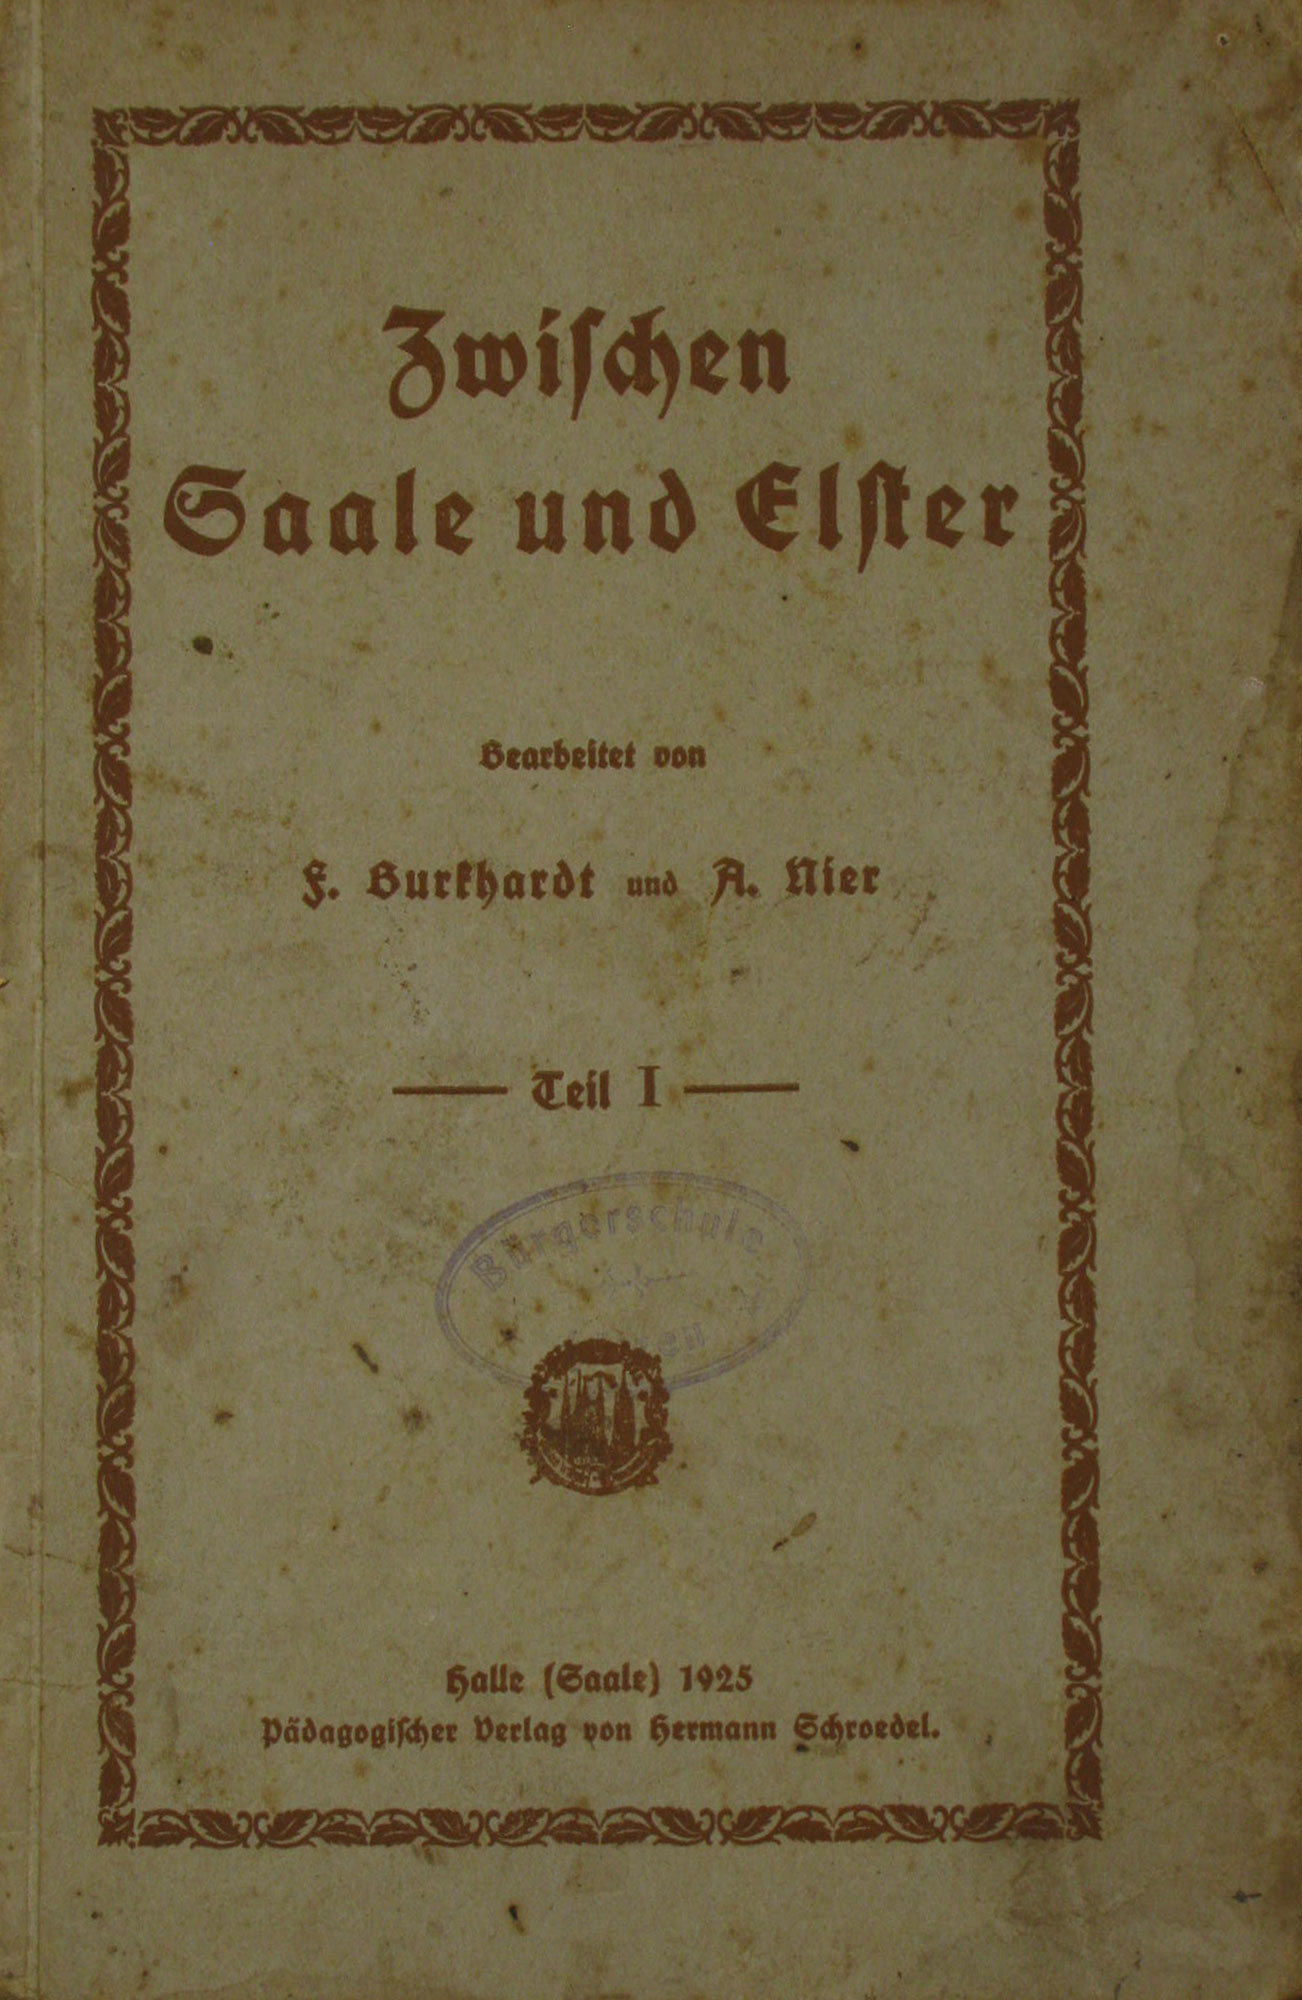 Burkhardt, F. und A. Nier:  Zwischen Saale und Elster (Teil 1) 